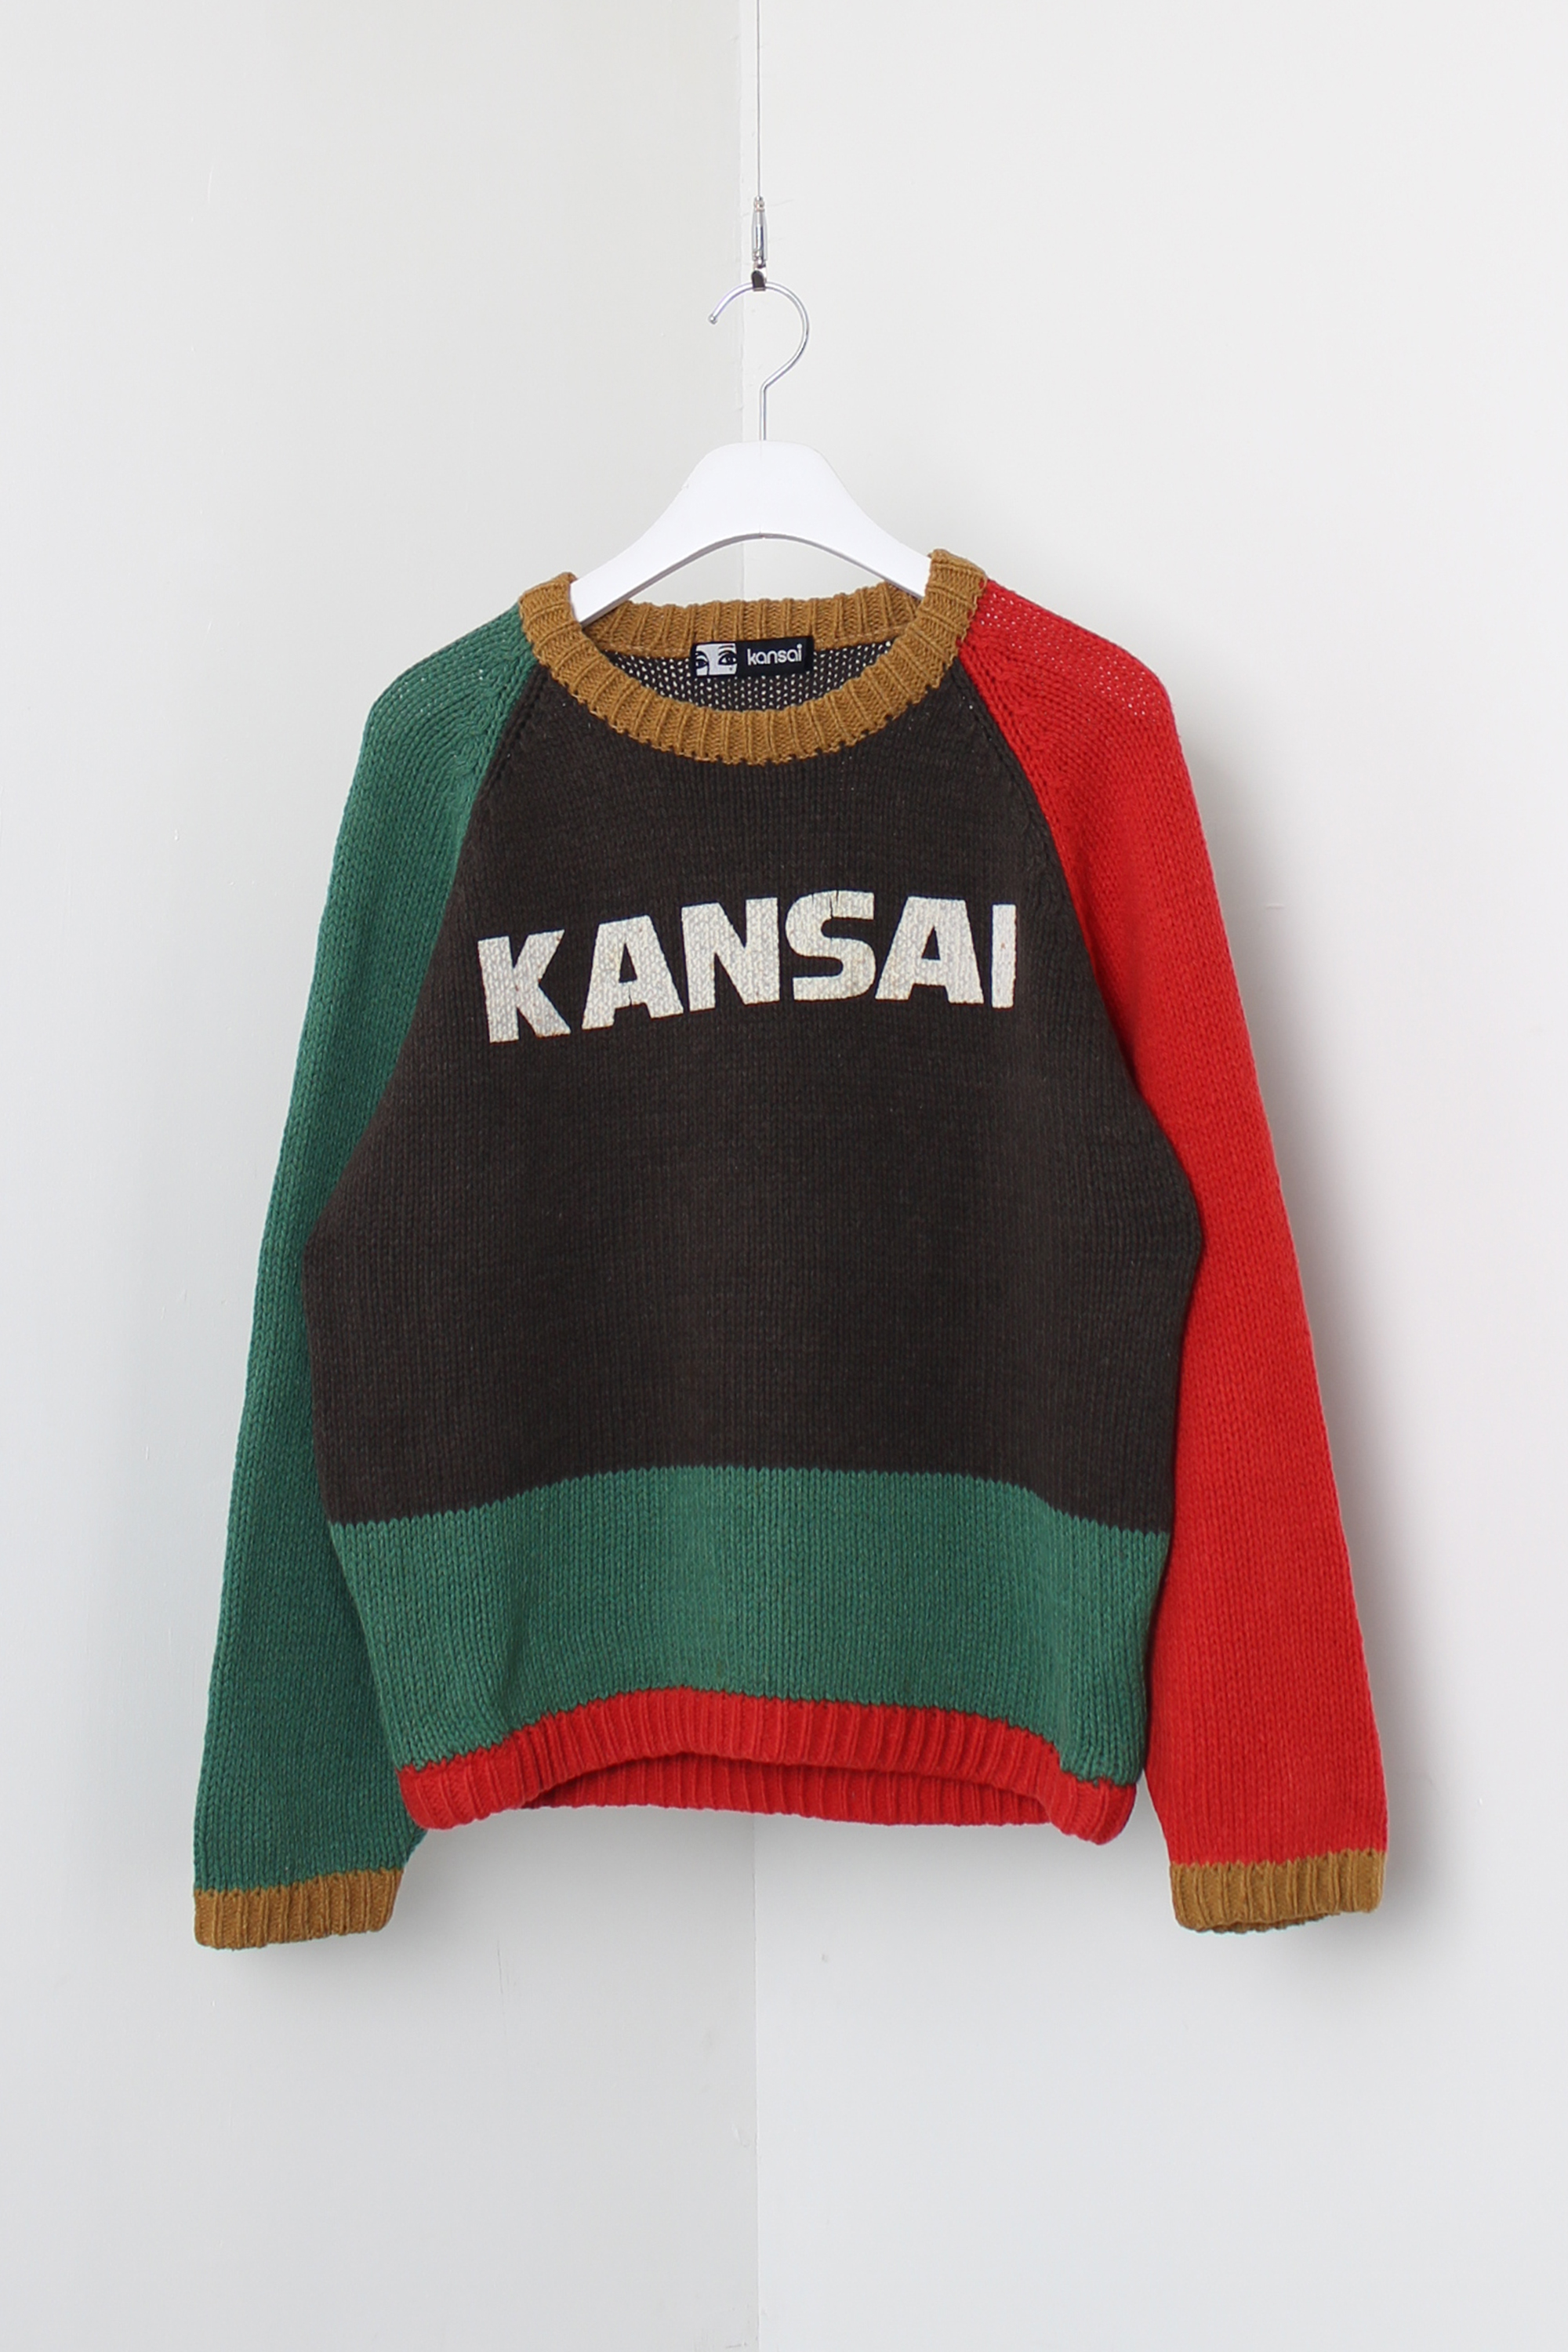 kansai yamamoto knit